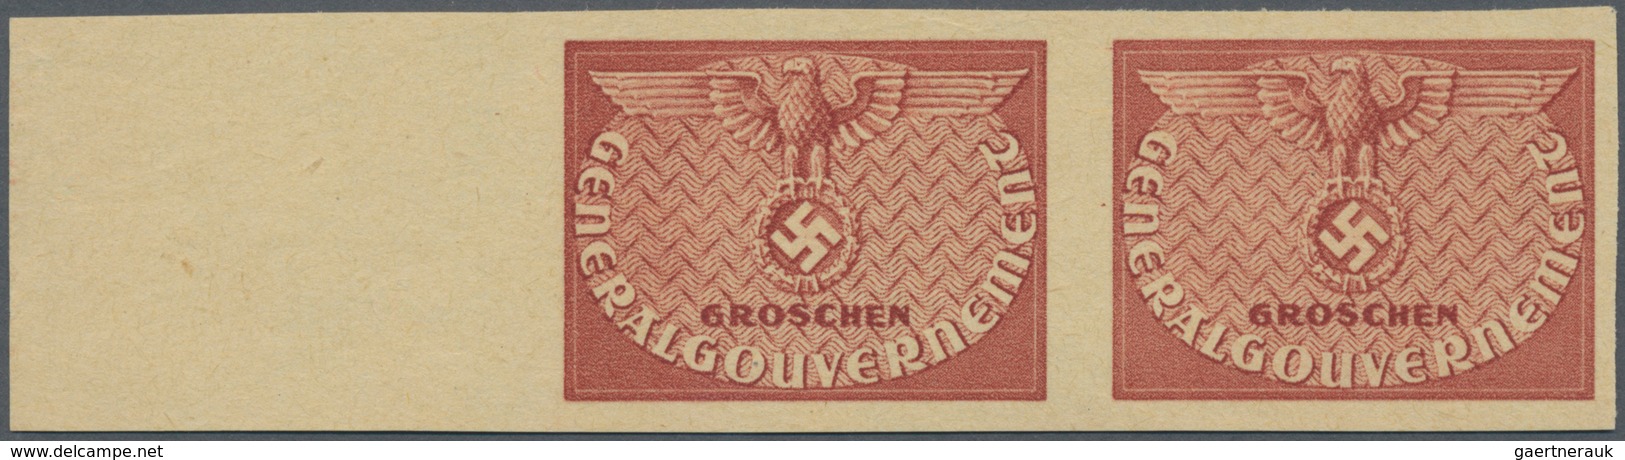 Dt. Besetzung II WK - Generalgouvernement - Dienstmarken: 1940, (24) Gr. Probedruck In Dunkelbräunli - Bezetting 1938-45